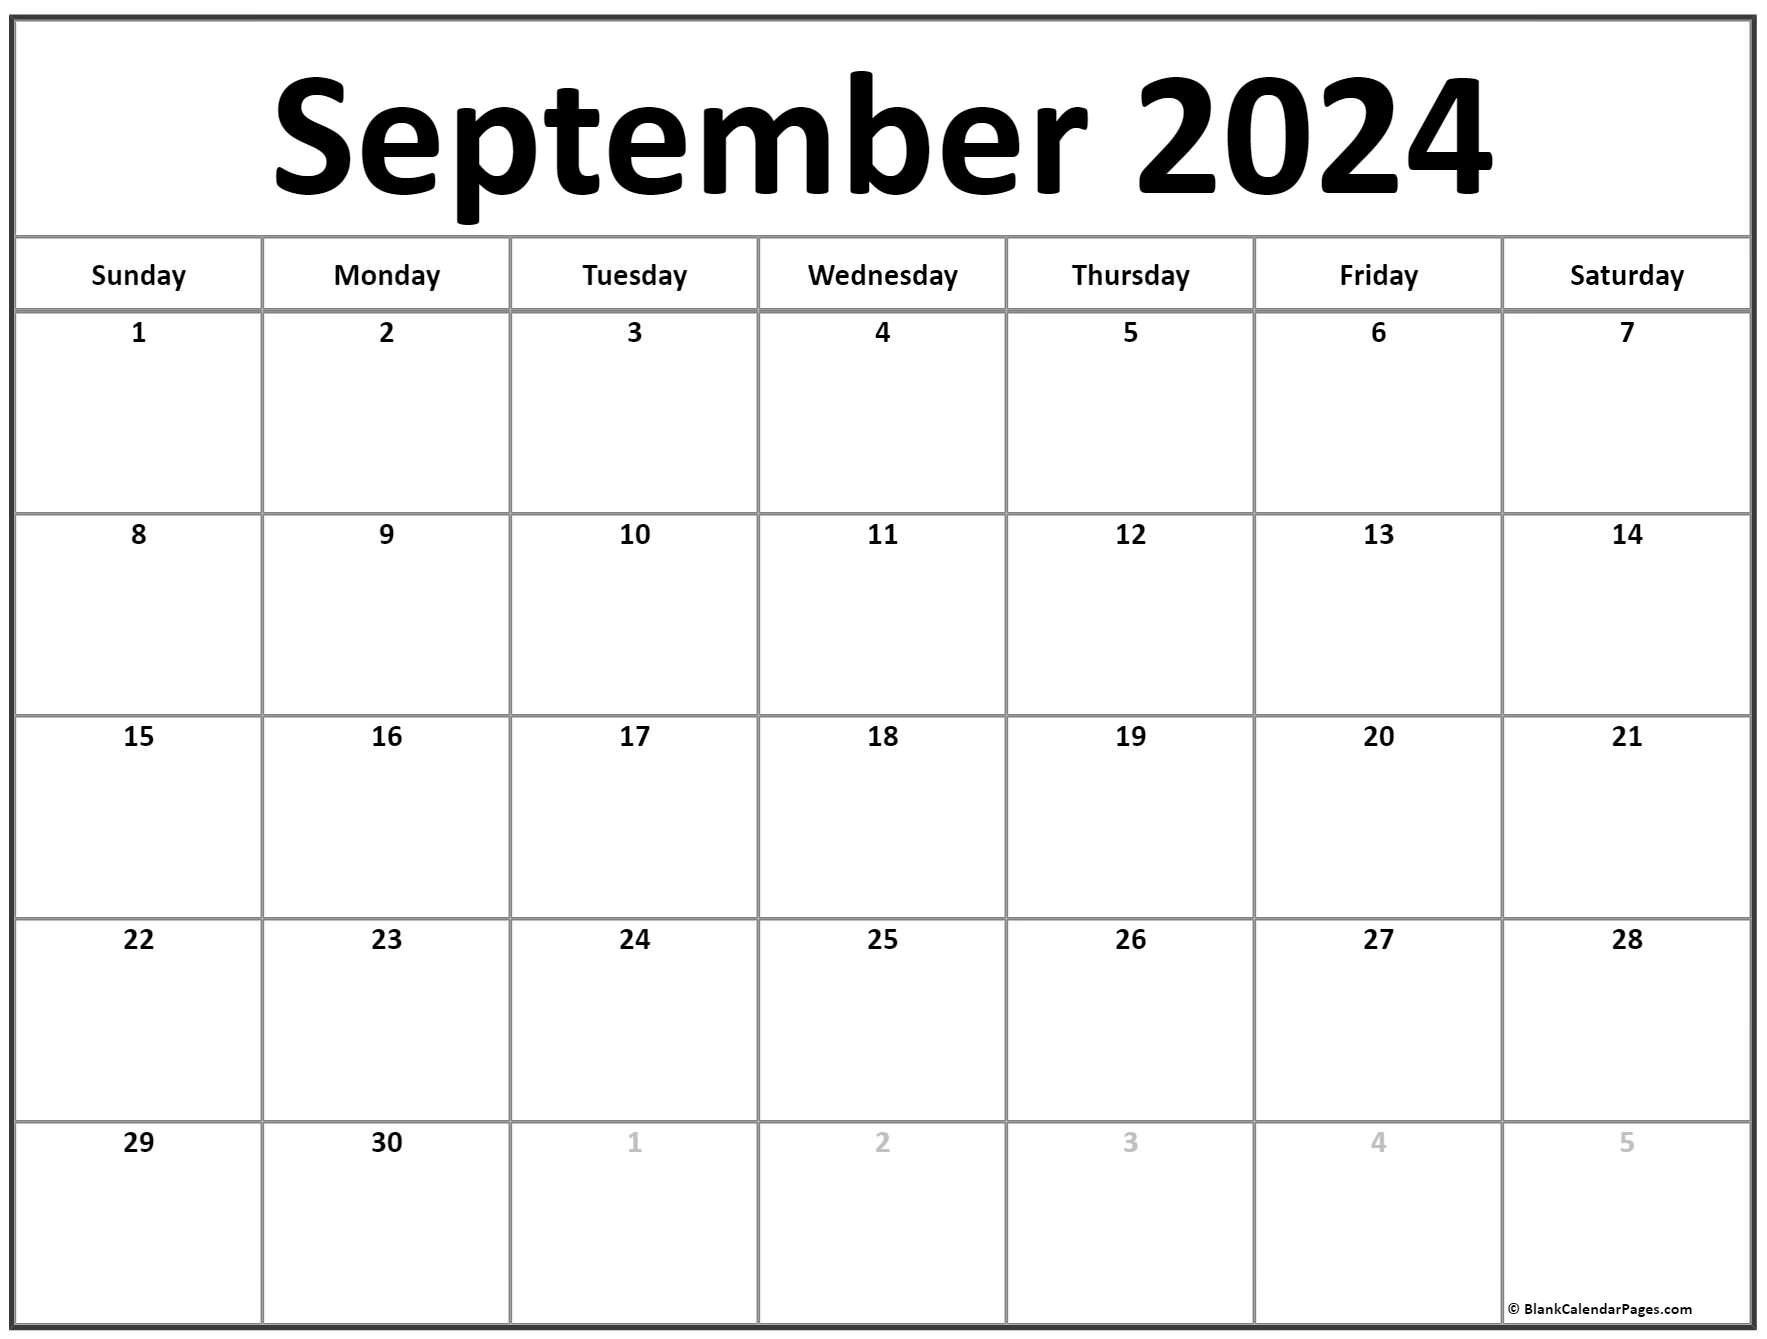 September 2023 Calendars Free Calendar Printable Pdf Template Vrogue